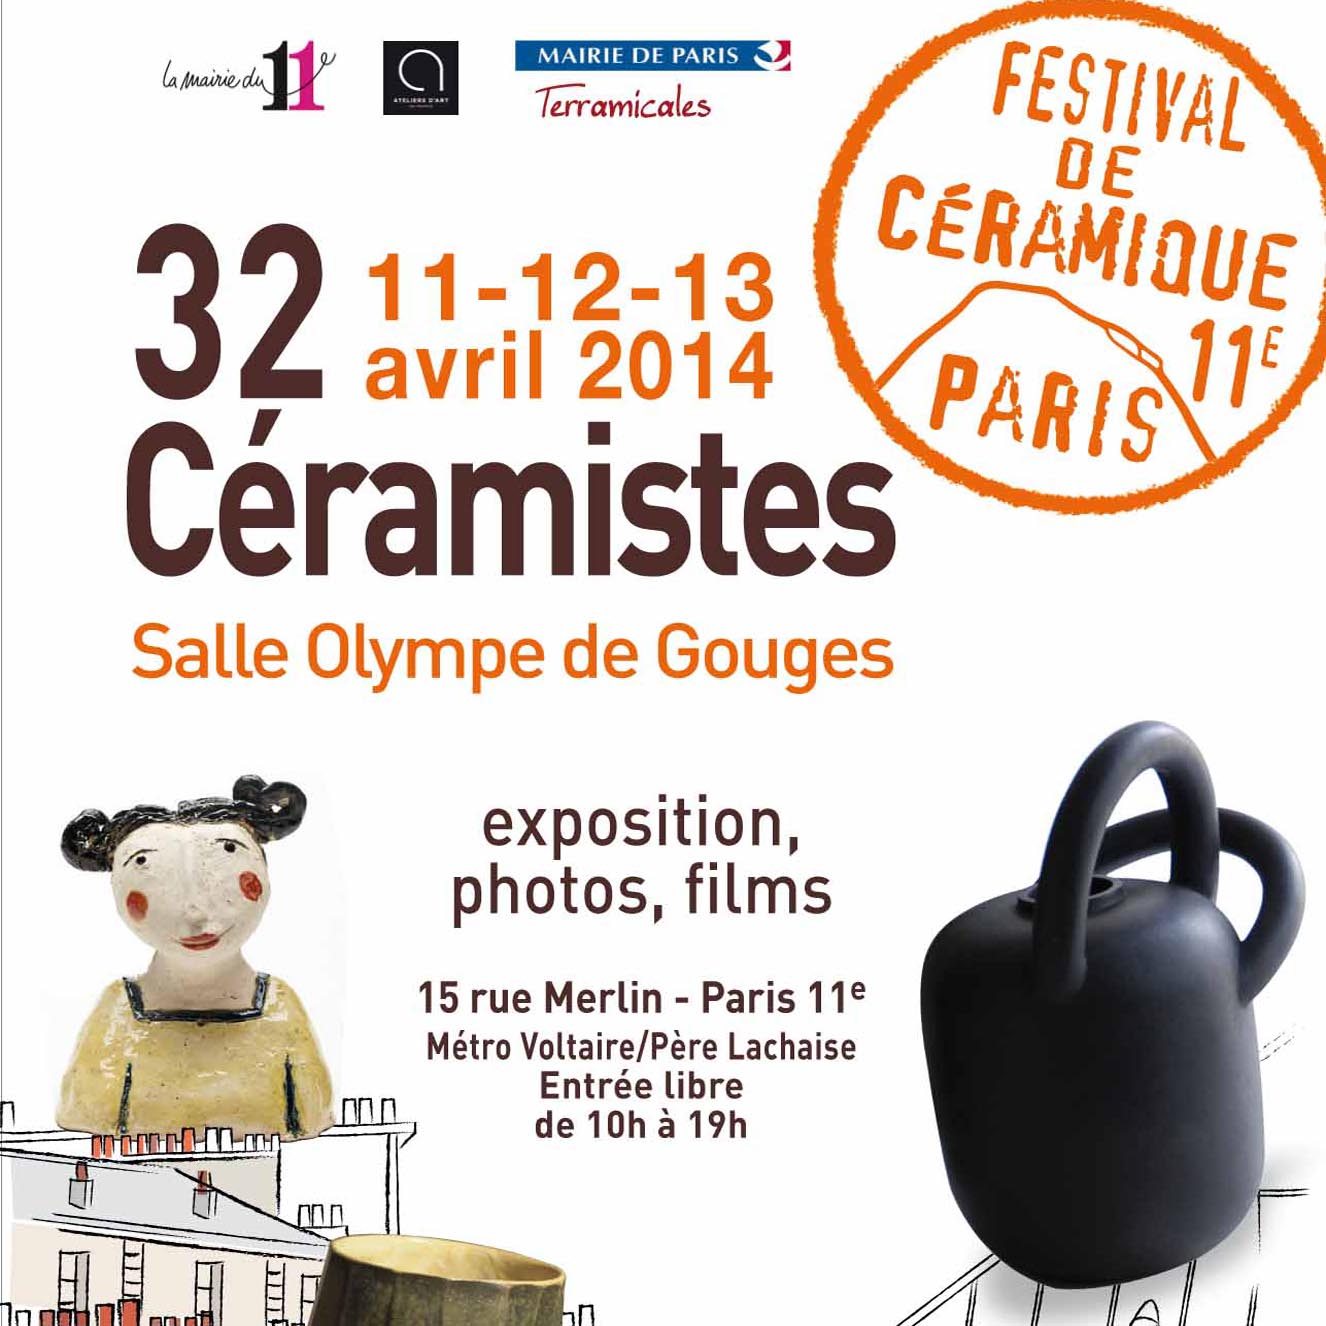 flyer-festival-ceramique-paris11